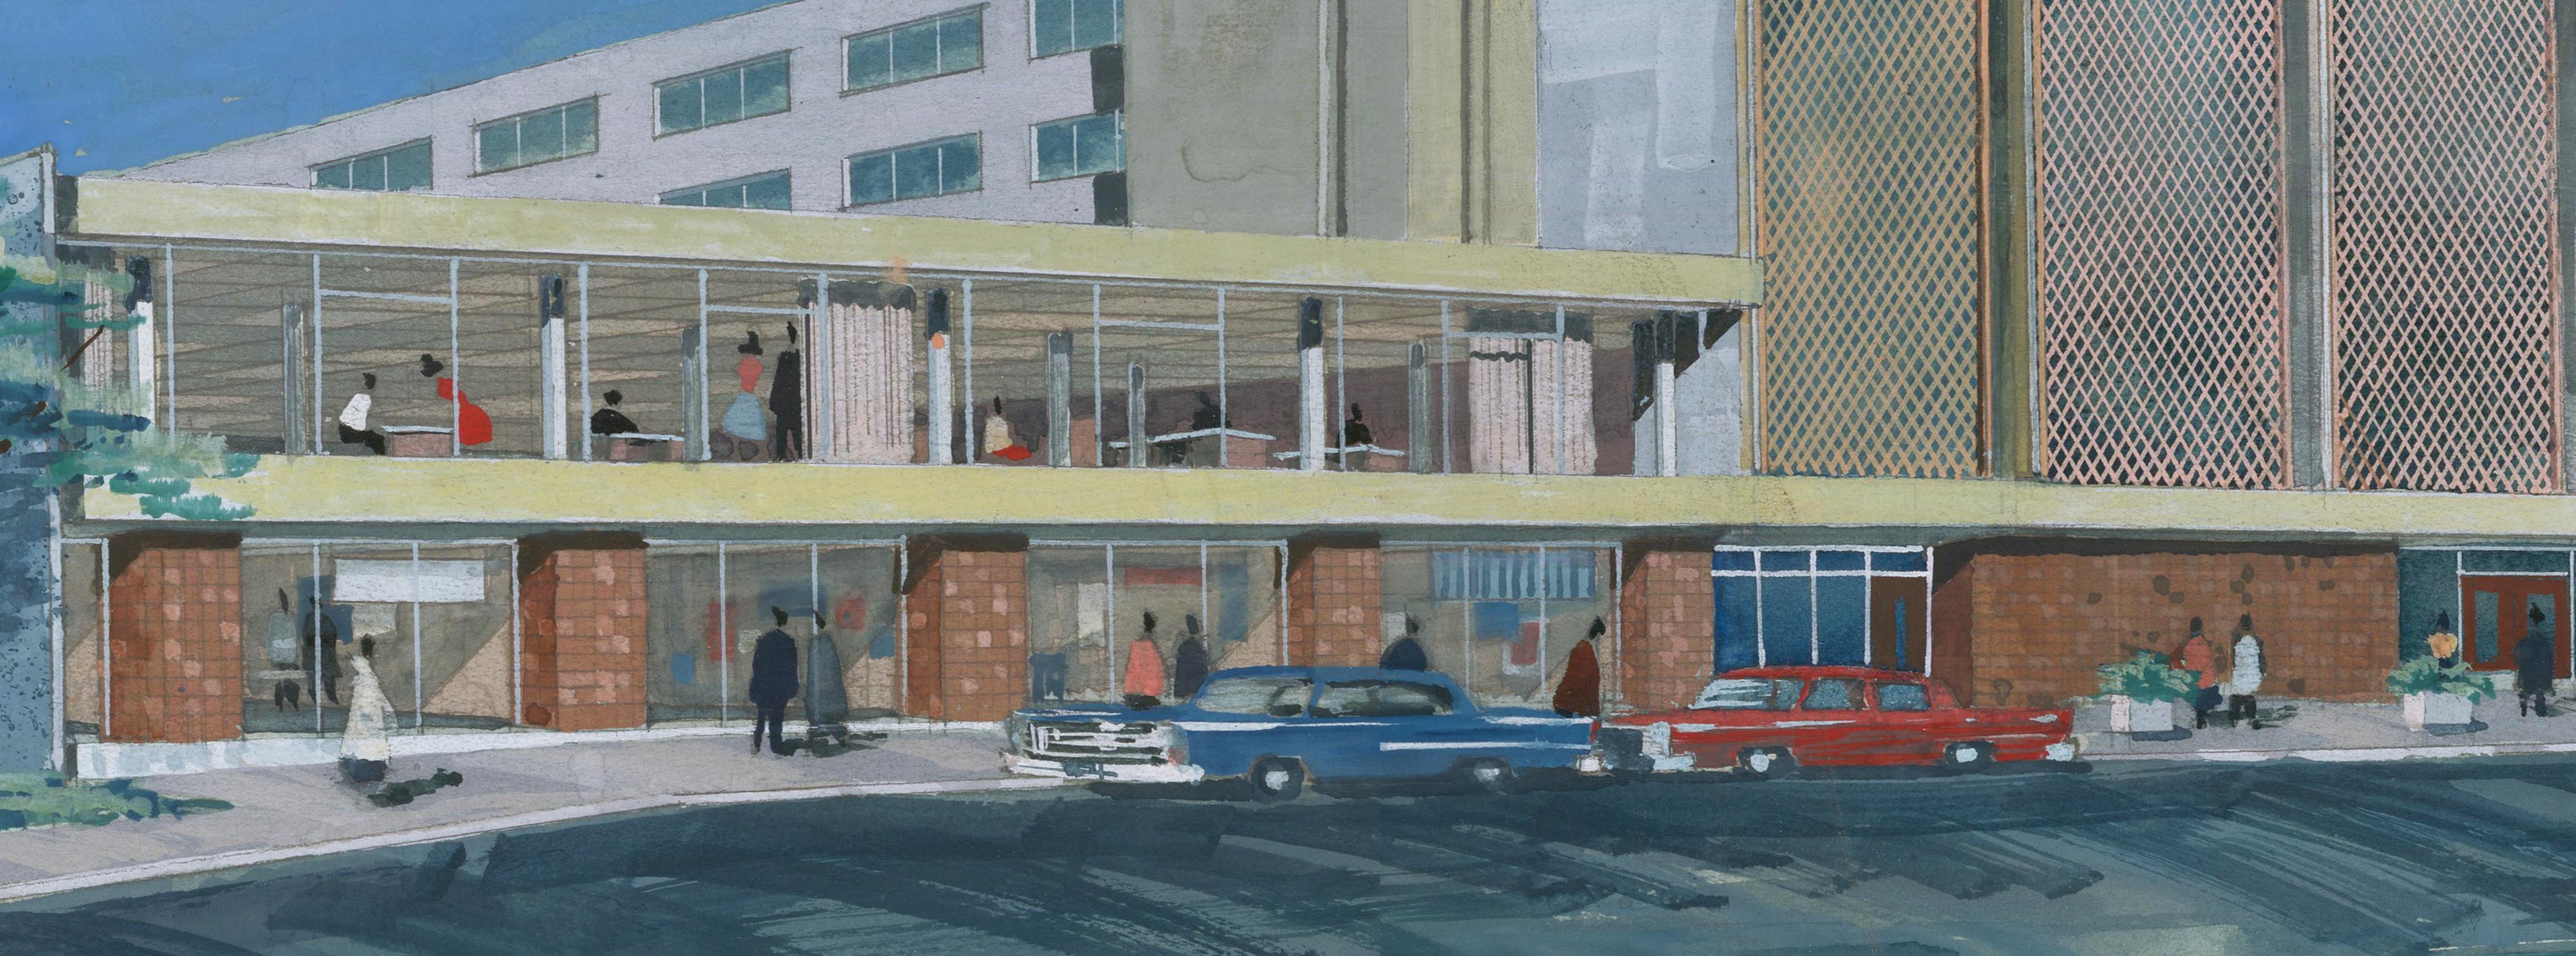 Possiblement un rendu de la rénovation du Marion Oliver McCaw Hall dans le Downtown Seattle.
Gouache originale sur carton d'artiste.
Artistics, circa 1962, artiste inconnu.